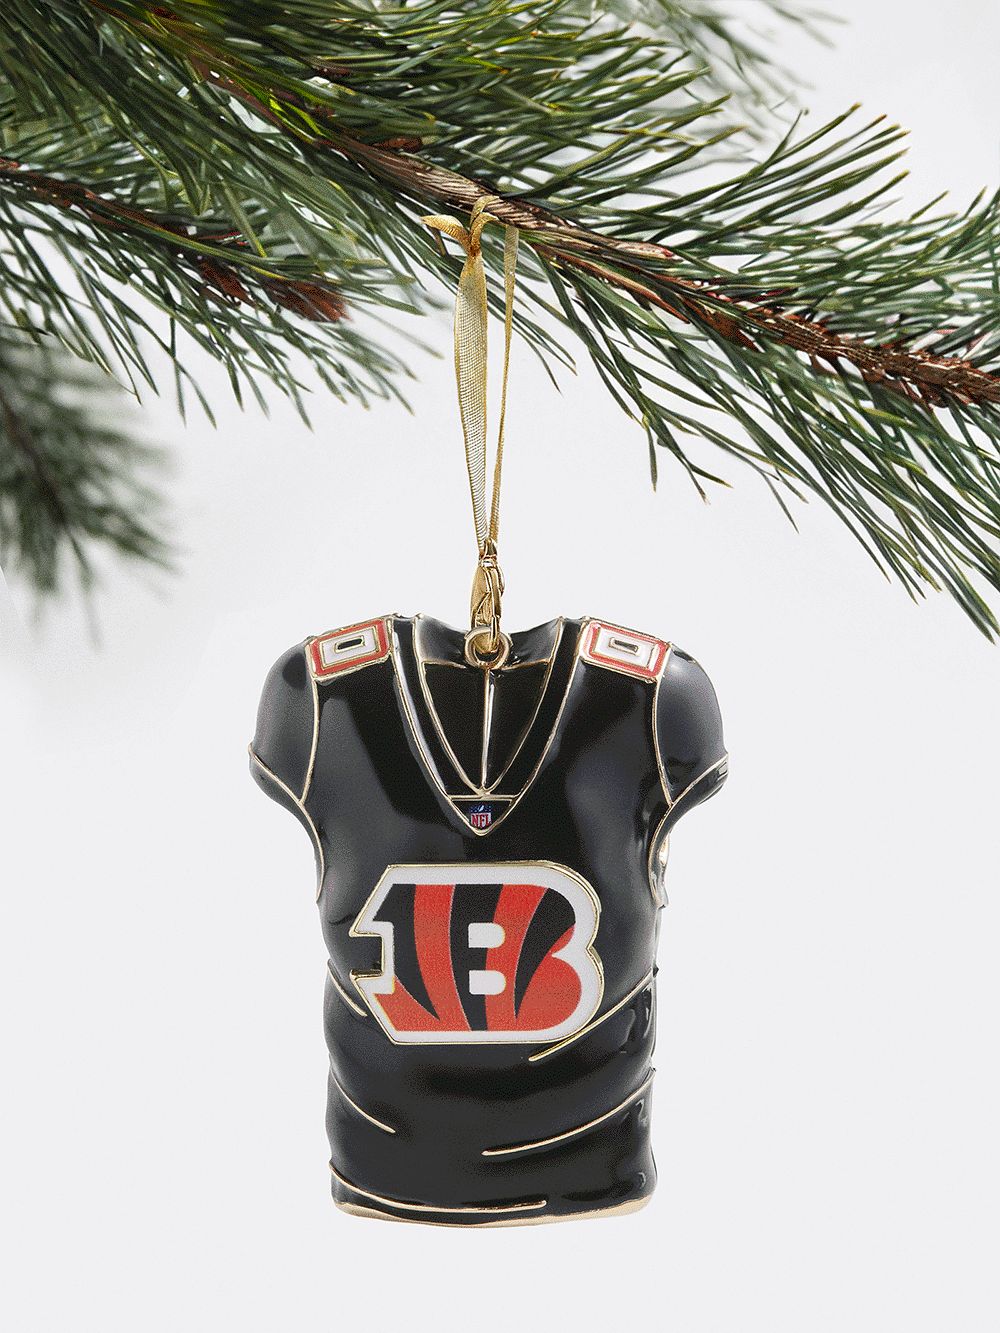 Cincinnati Bengals NFL Custom Jersey Ornament - Cincinnati Bengals | BaubleBar (US)